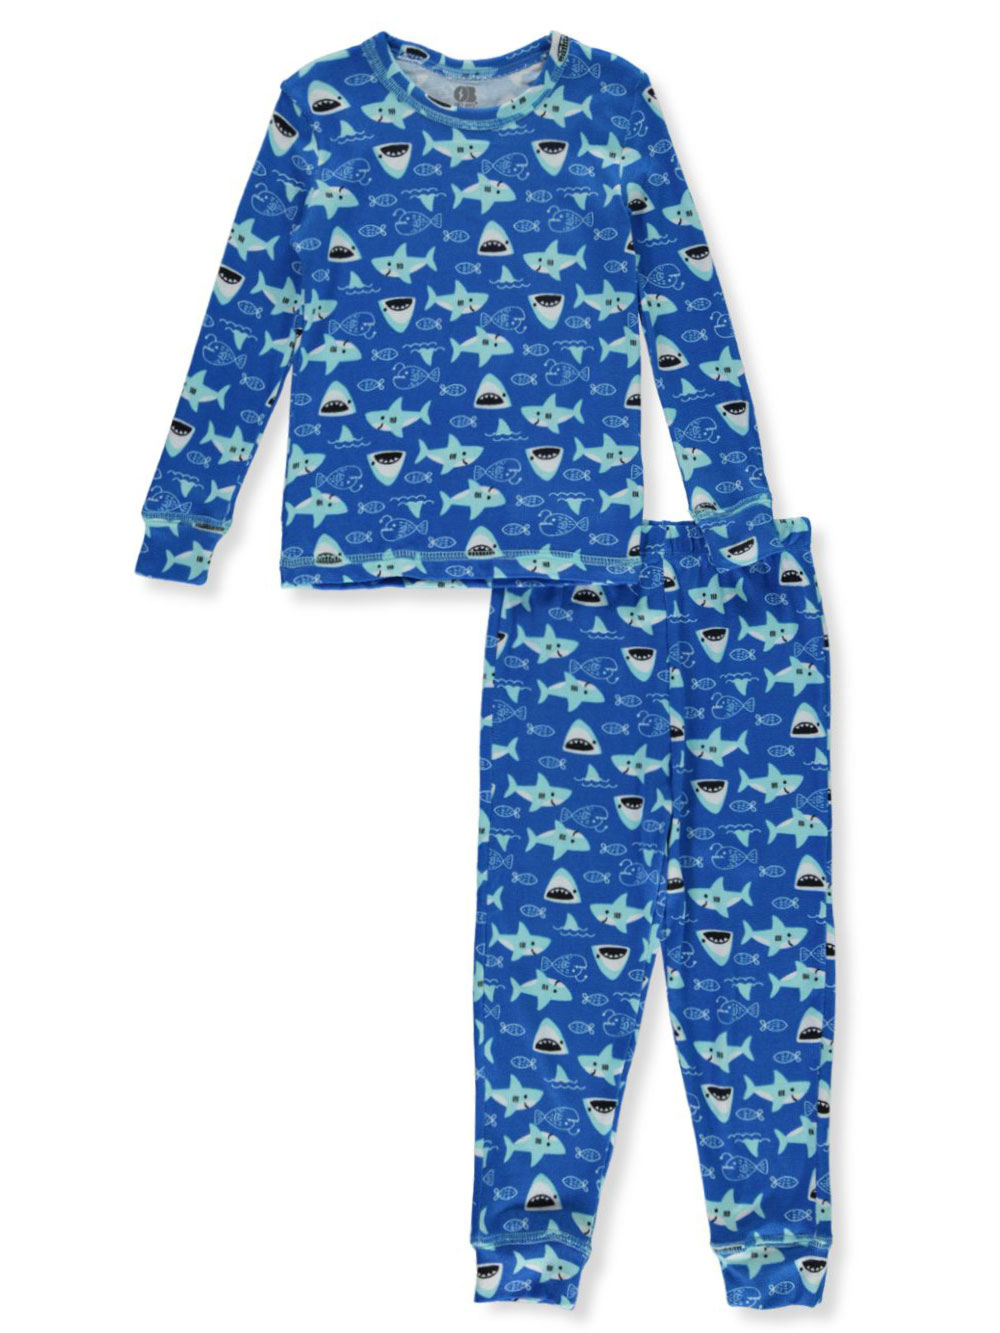 Size 4t Sleepwear for Boys